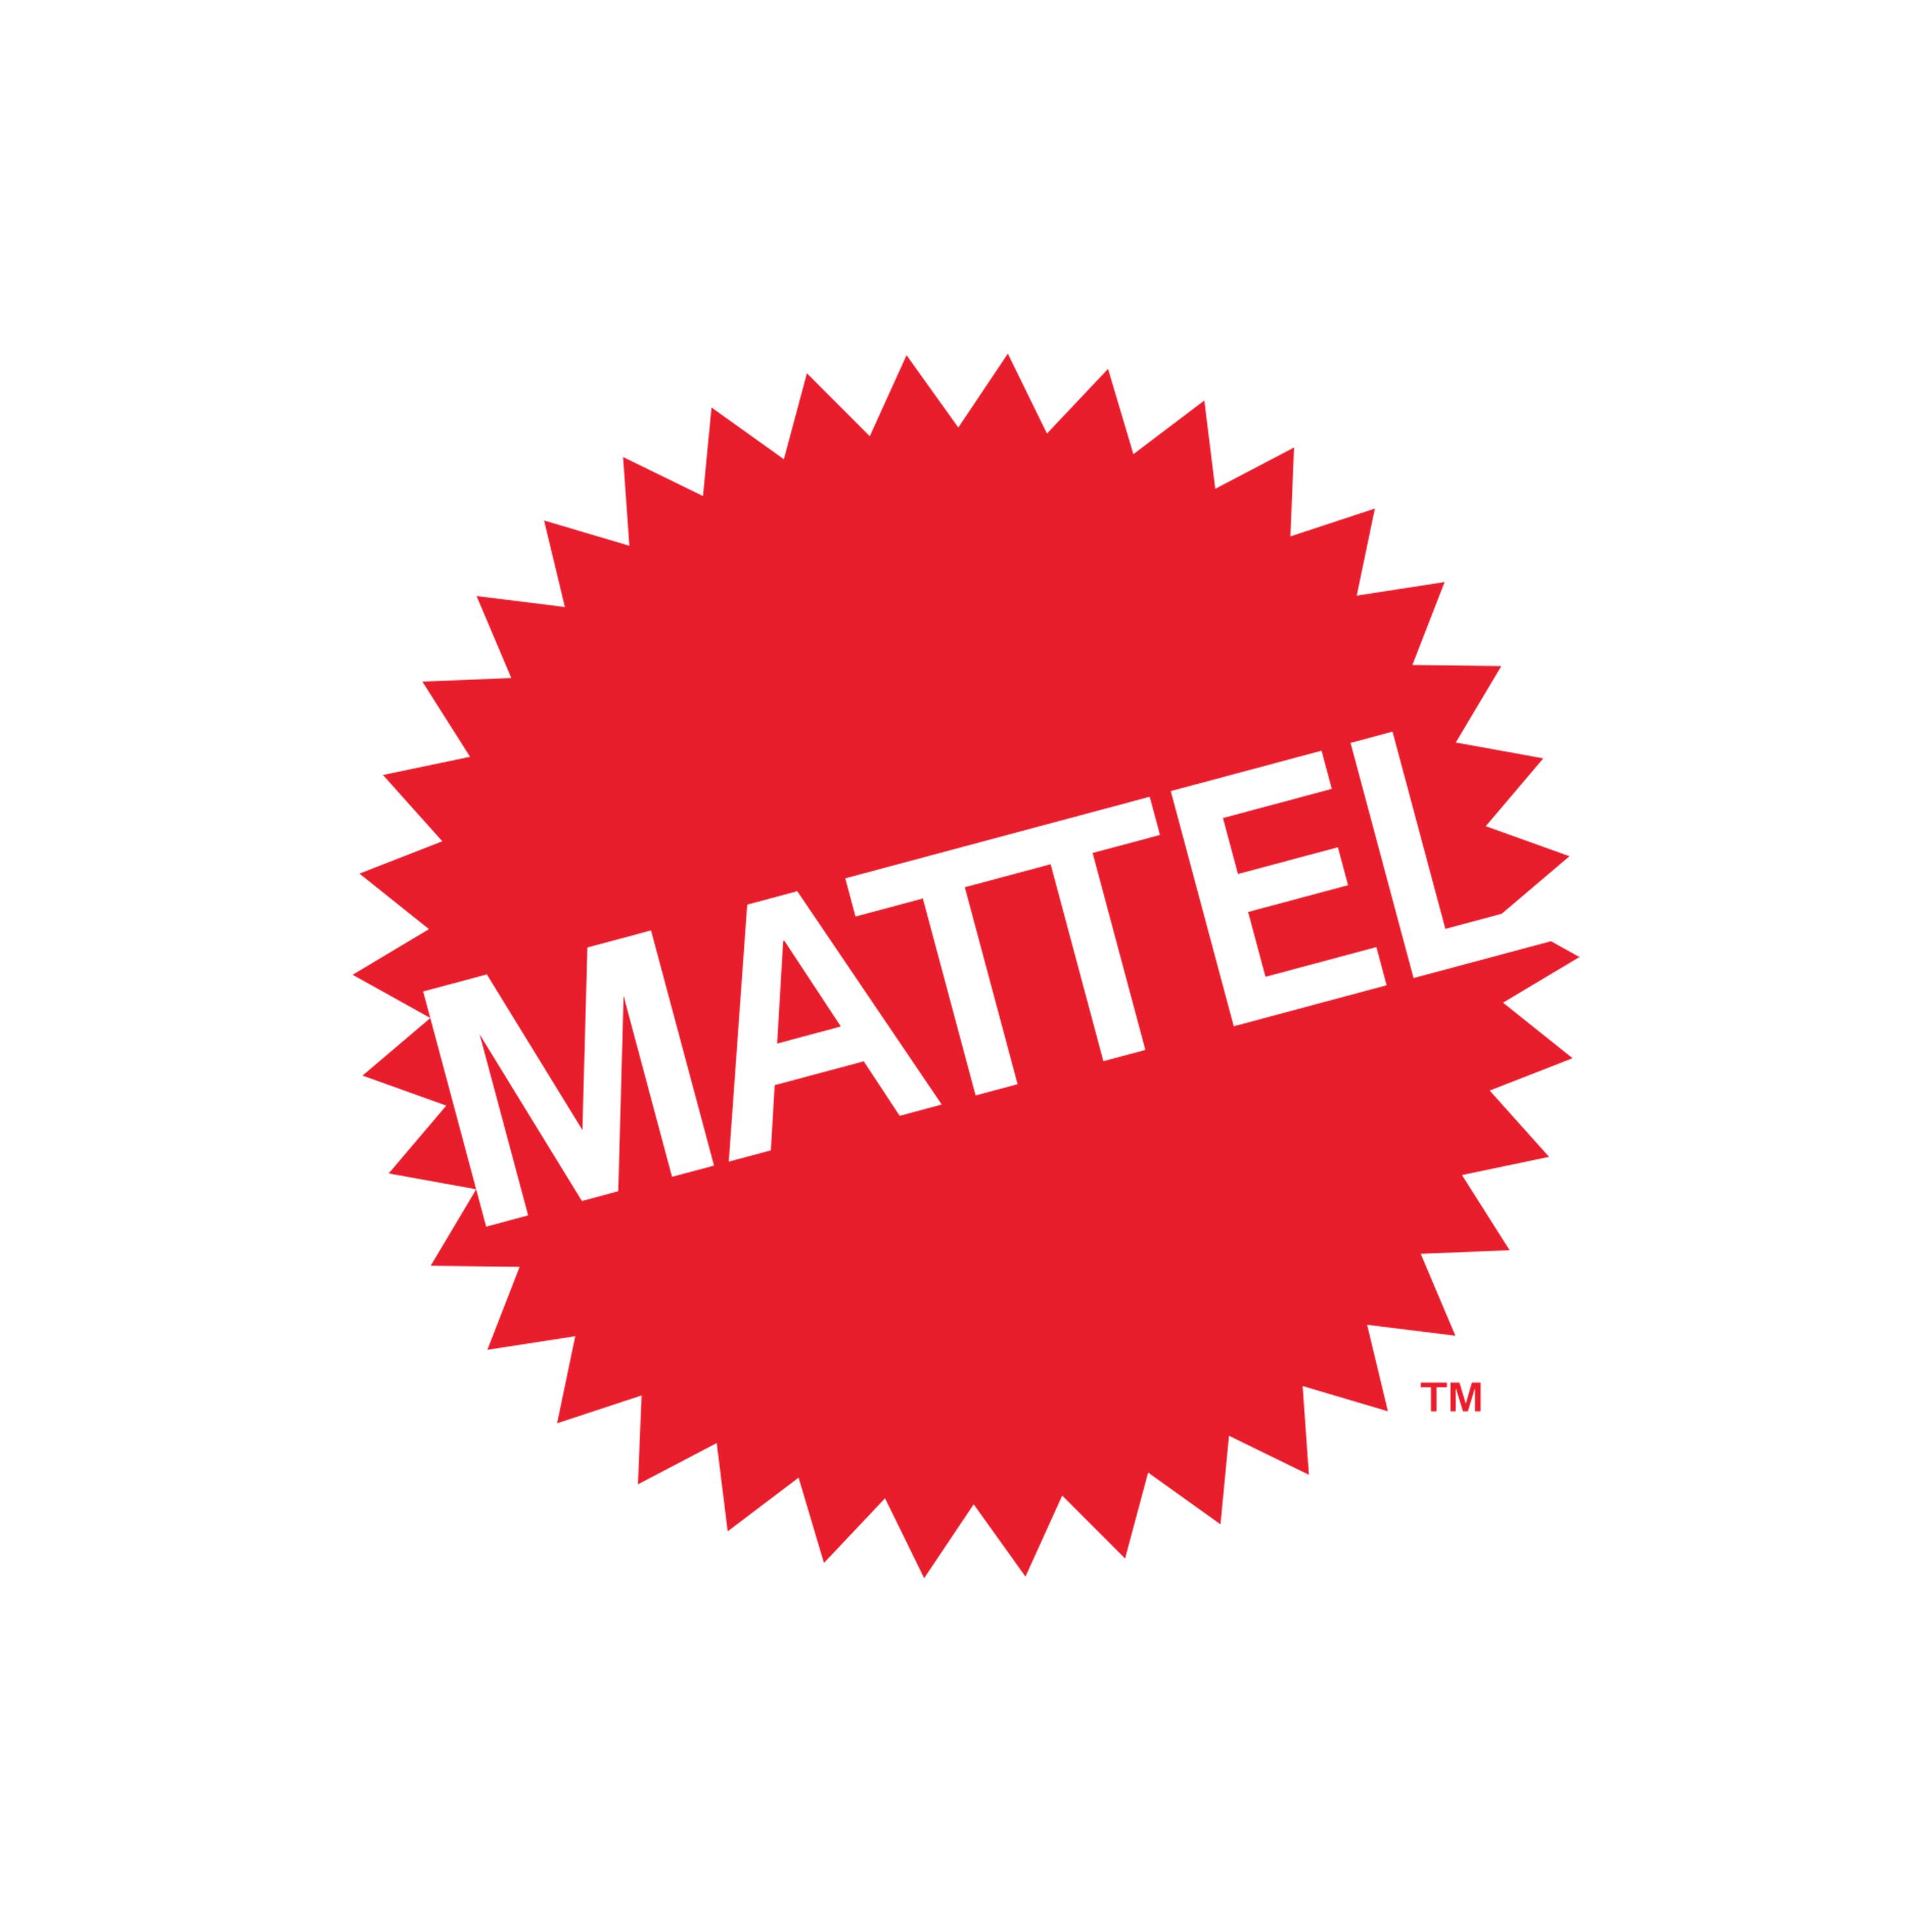 Mattl